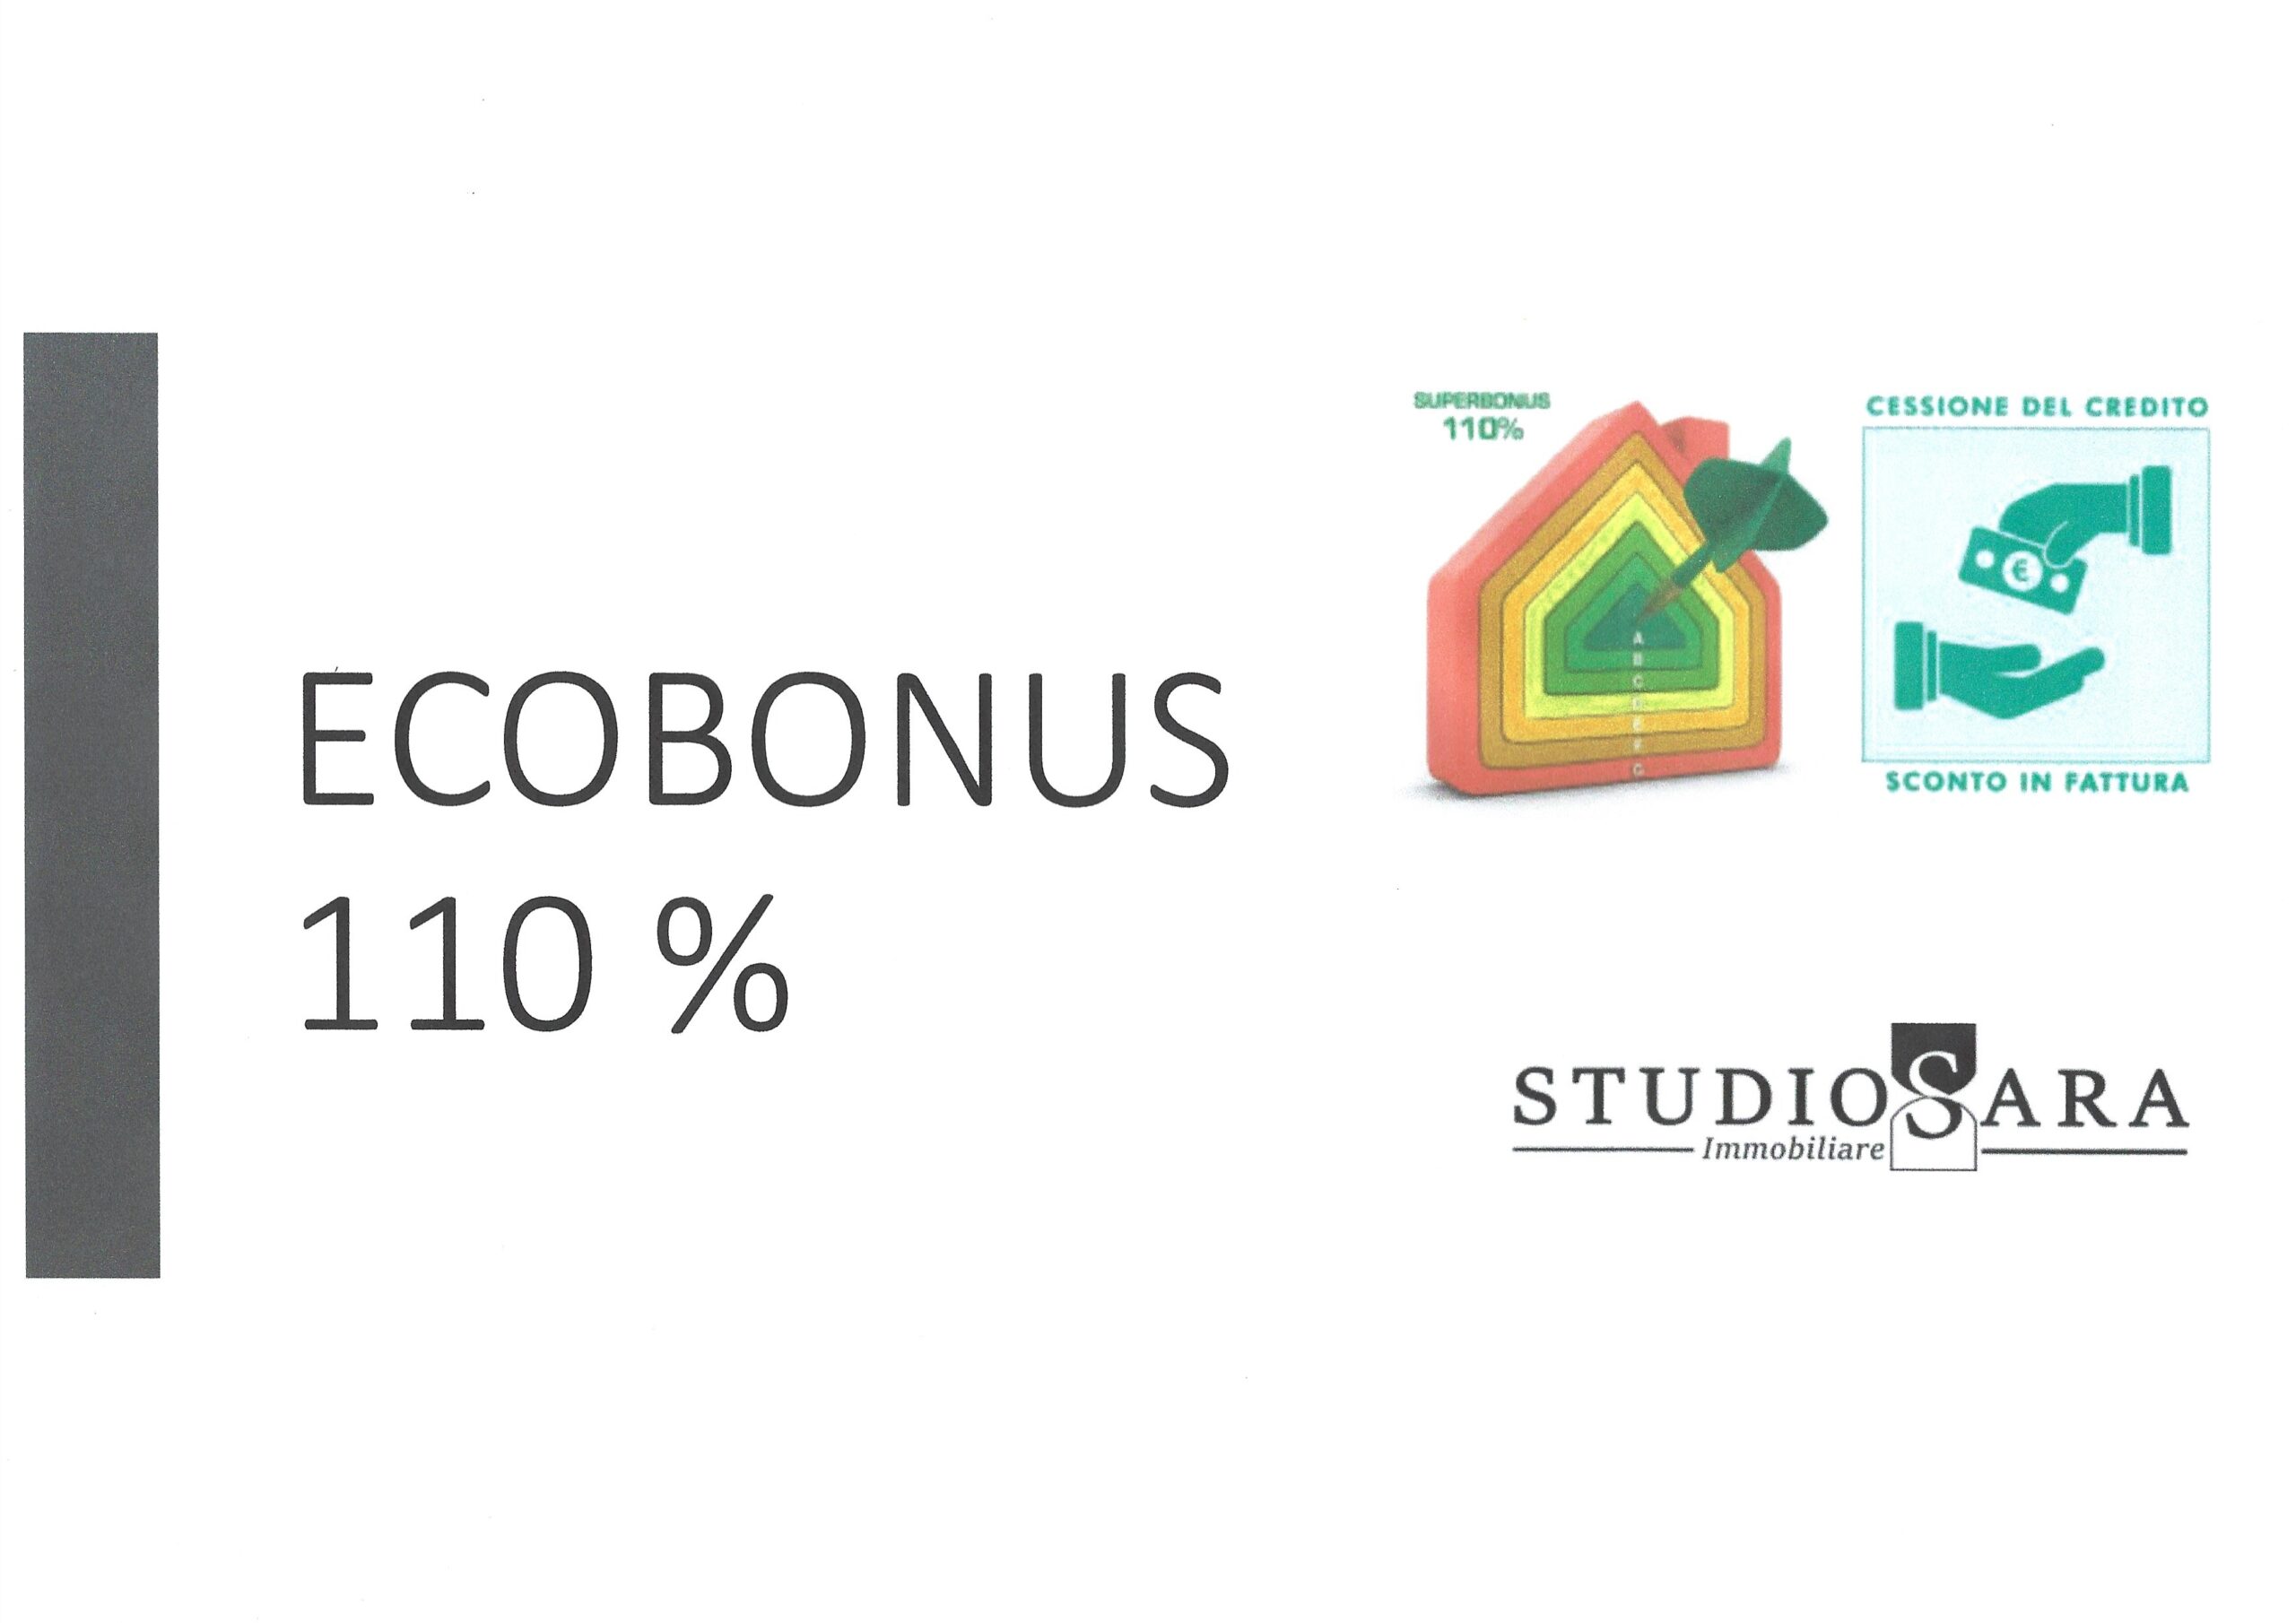 Eco bonus 110%